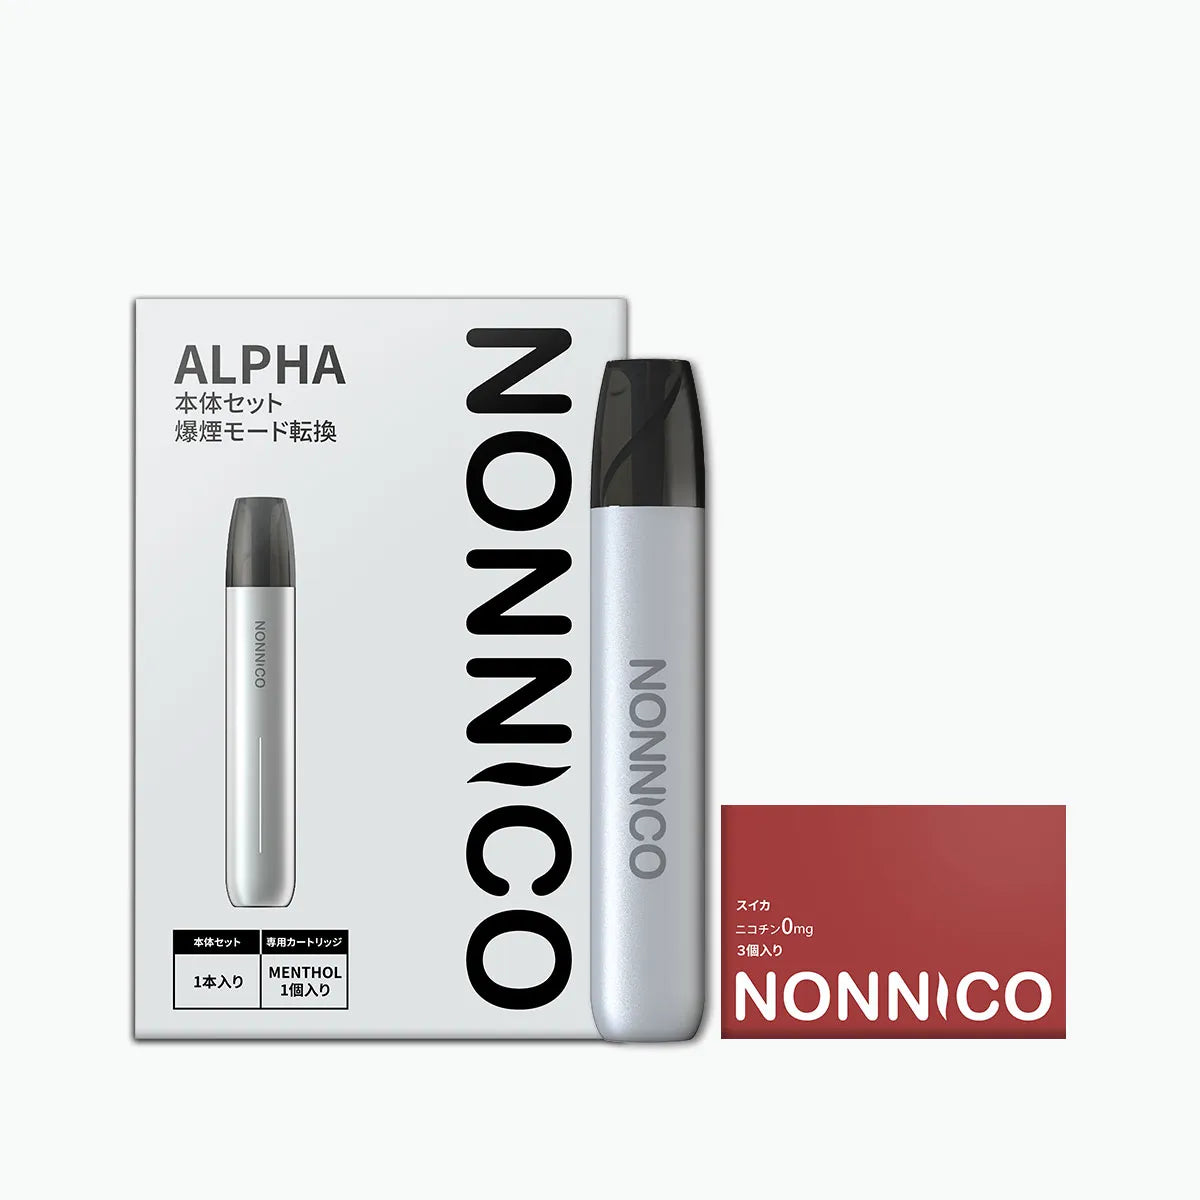 NONNICO Alpha POD型電子タバコ vape キットセット（シルバー / スイカ）